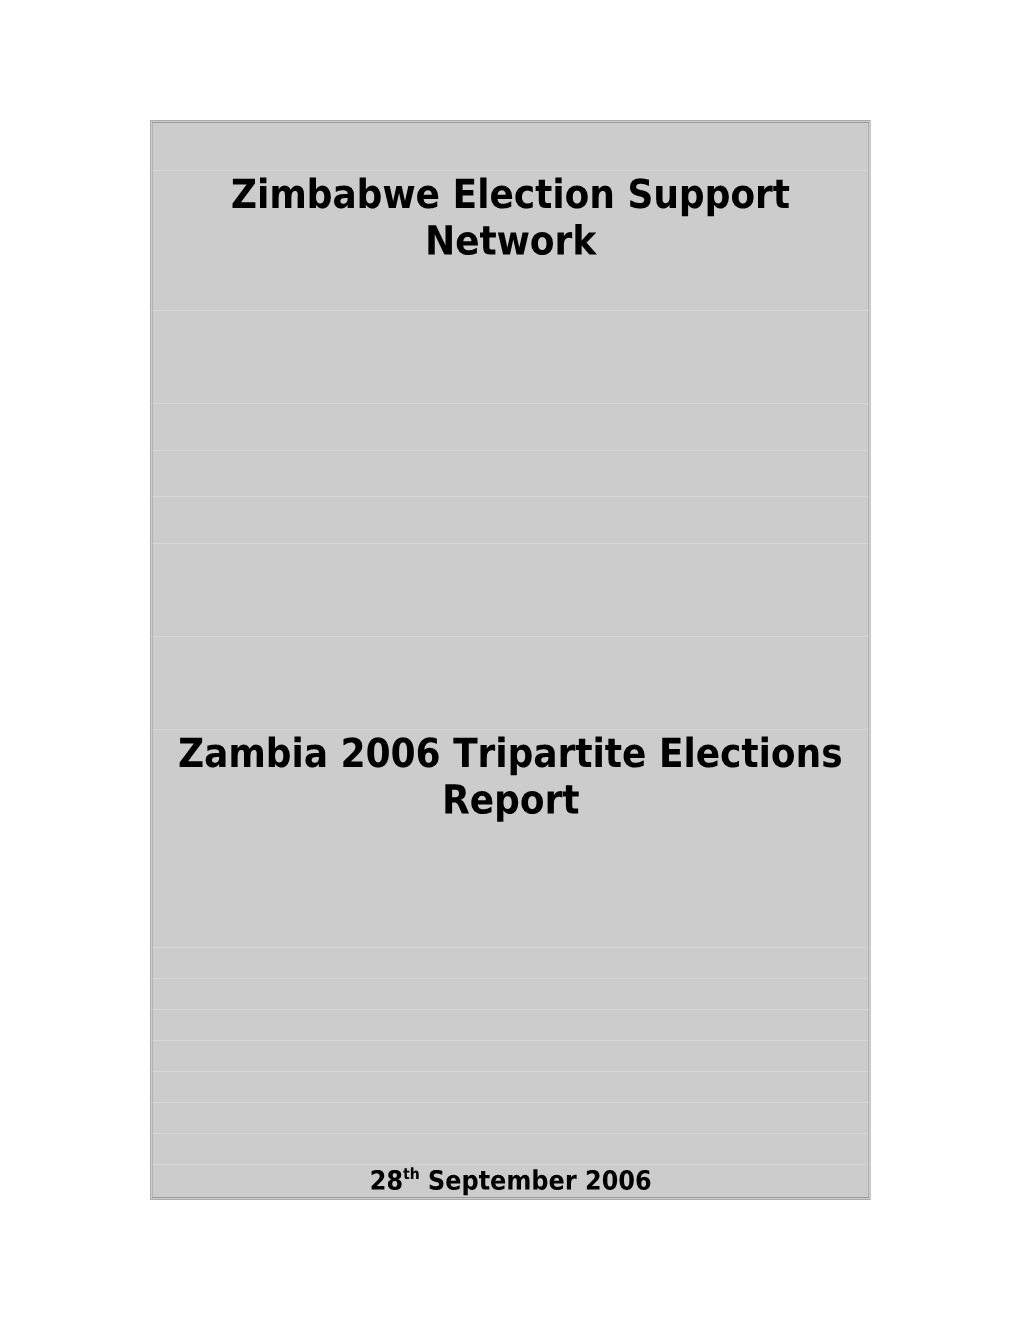 Zambia Tripartite Election Report